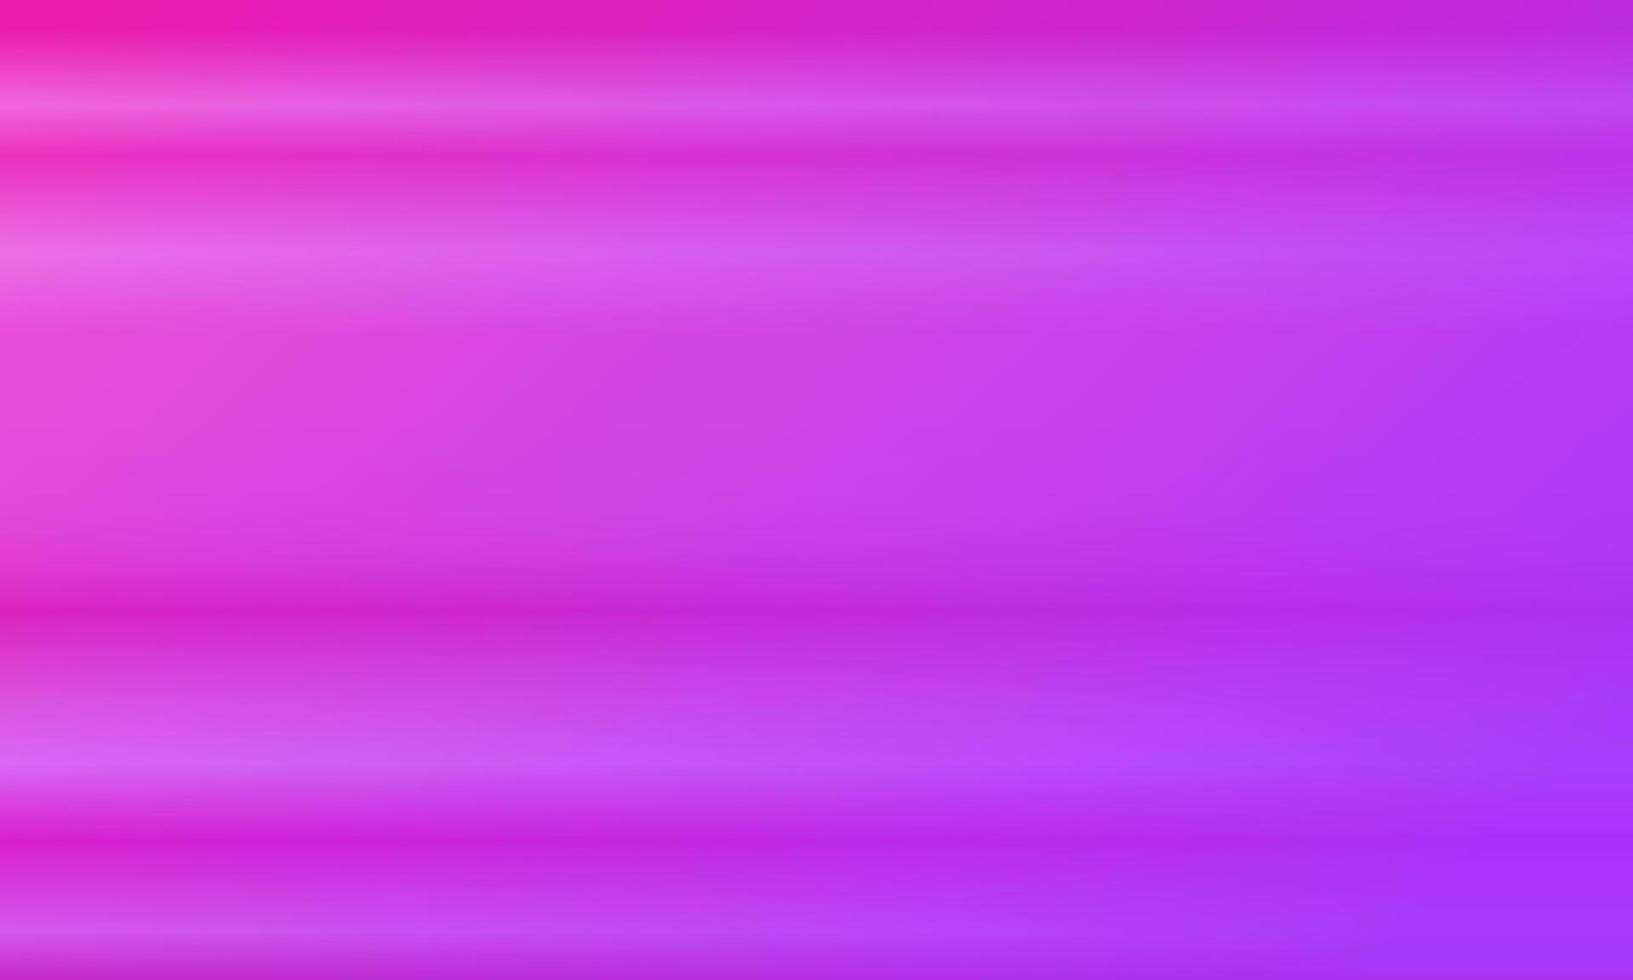 rosa und lila horizontaler Farbverlauf abstrakter Hintergrund. glänzender, verschwommener, einfacher, moderner und farbenfroher Stil. ideal für hintergrund, homepage, tapete, karte, cover, poster, banner oder flyer vektor